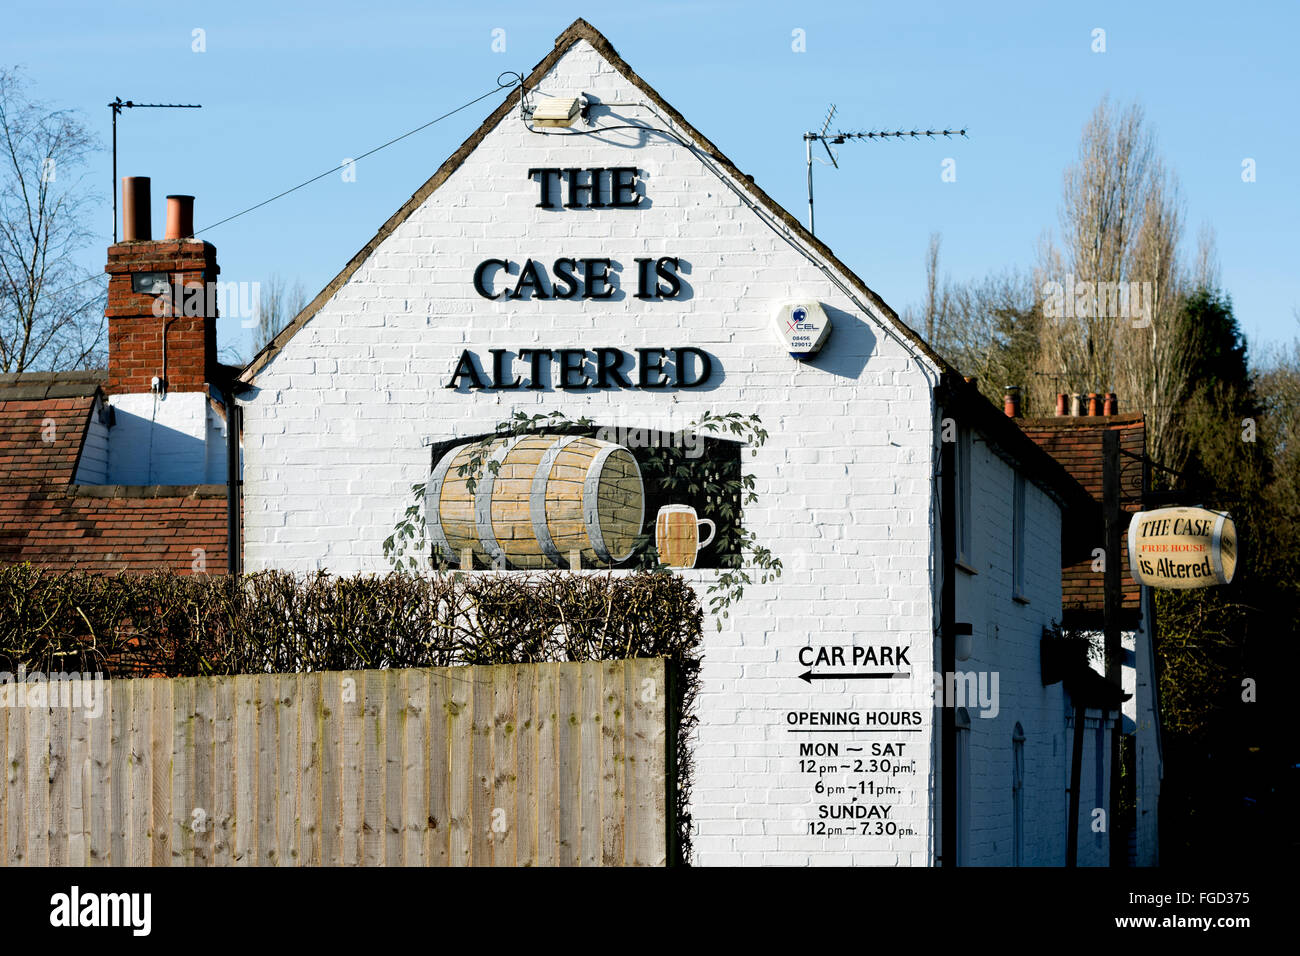 Il caso viene alterato pub, Hatton, Warwickshire, Inghilterra, Regno Unito Foto Stock